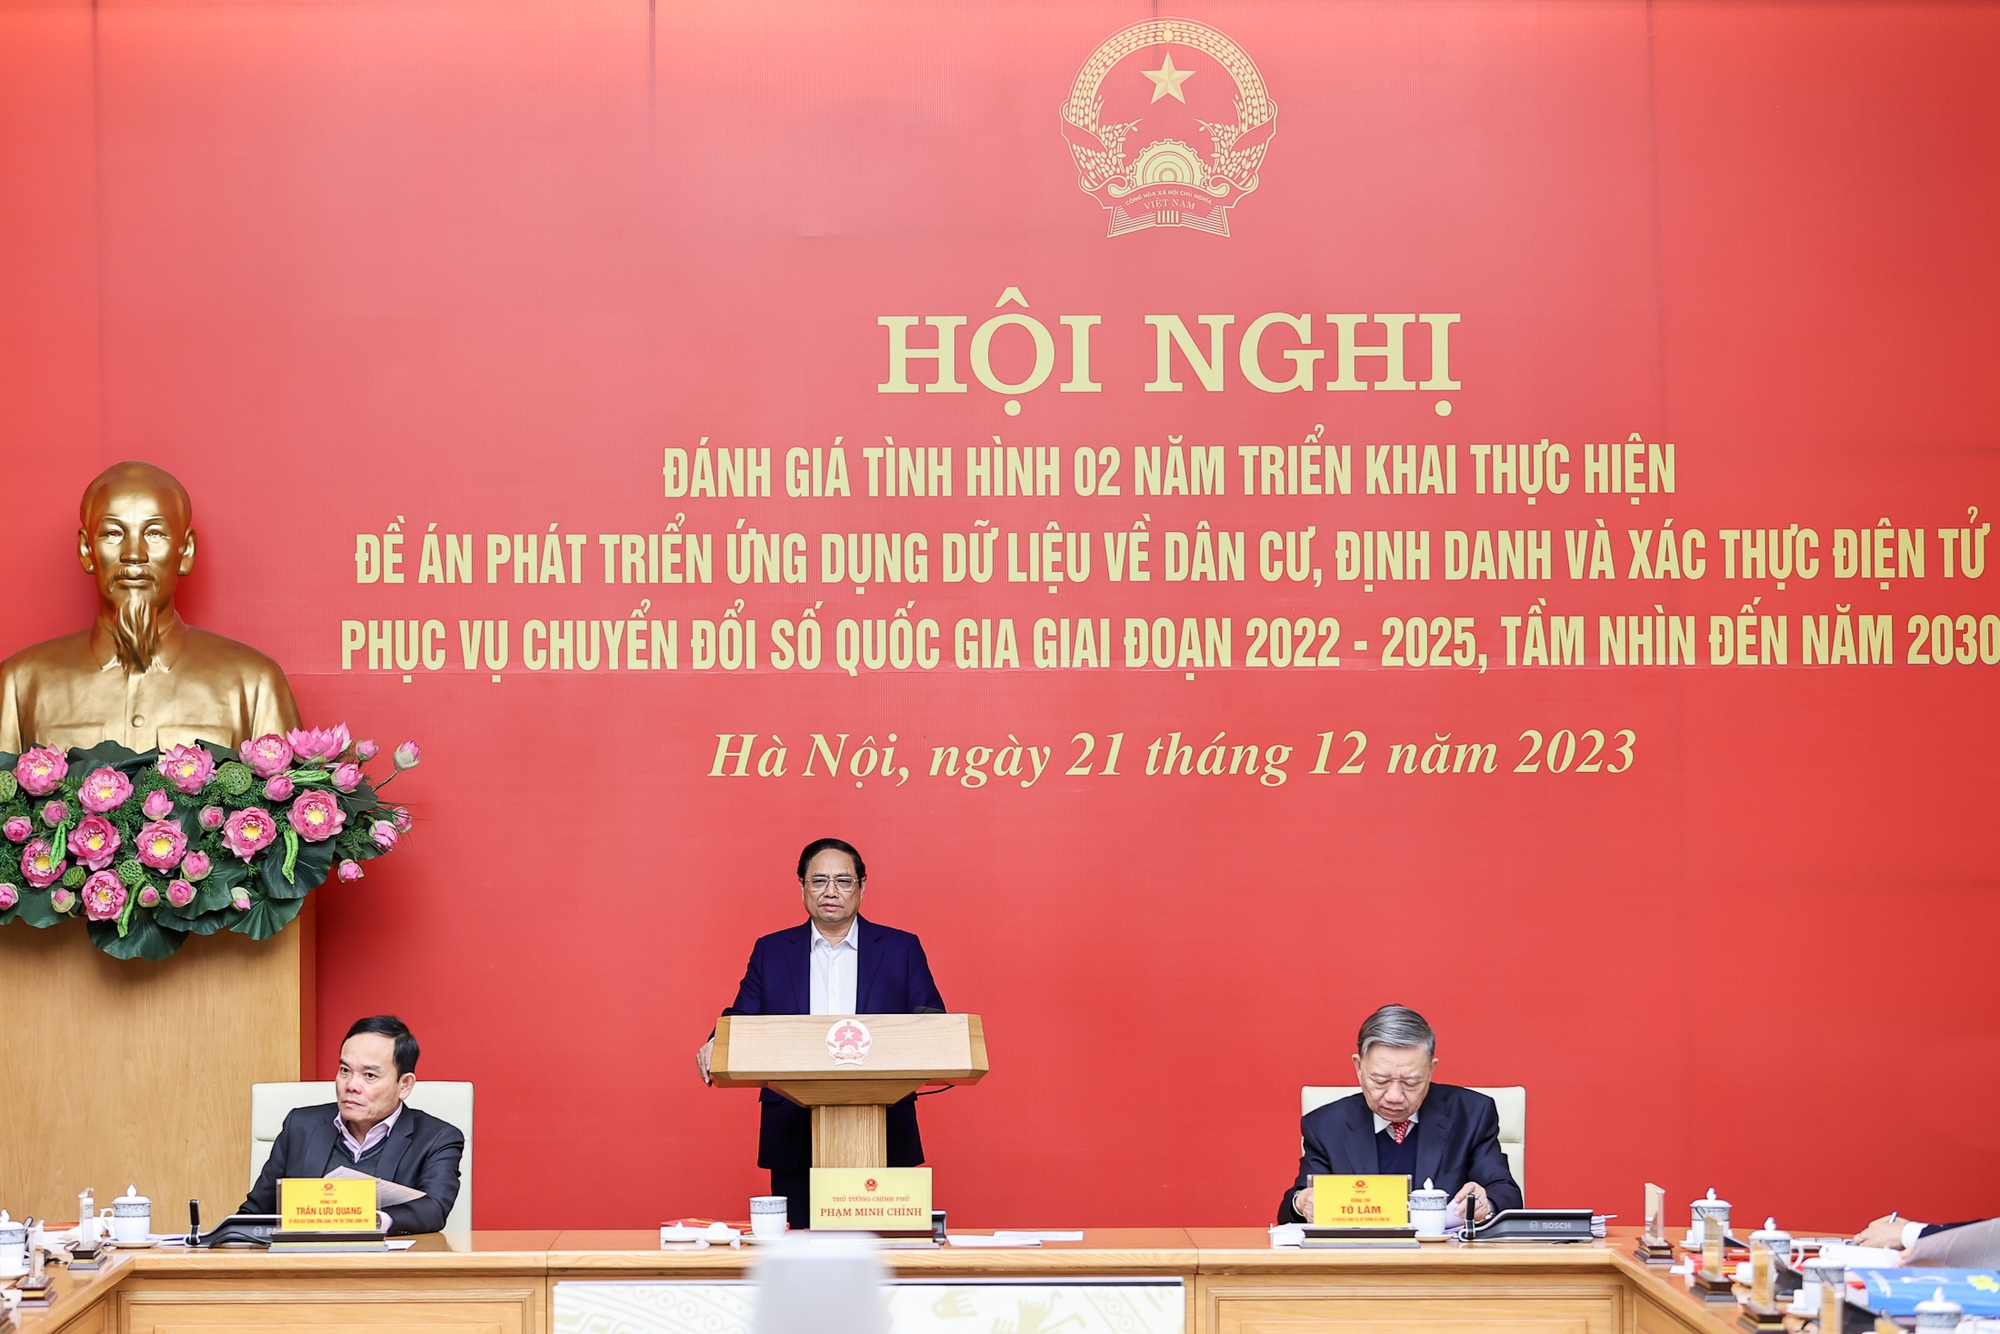 Thủ tướng Phạm Minh Chính chủ trì Hội nghị trực tuyến toàn quốc đánh giá tình hình 2 năm triển khai thực hiện Đề án 06 về ""Phát triển ứng dụng dữ liệu về dân cư, định danh và xác thực điện tử phục vụ chuyển đổi số quốc gia giai đoạn 2022-2025, tầm nhìn đến năm 2030" - Ảnh: VGP/Nhật Bắc